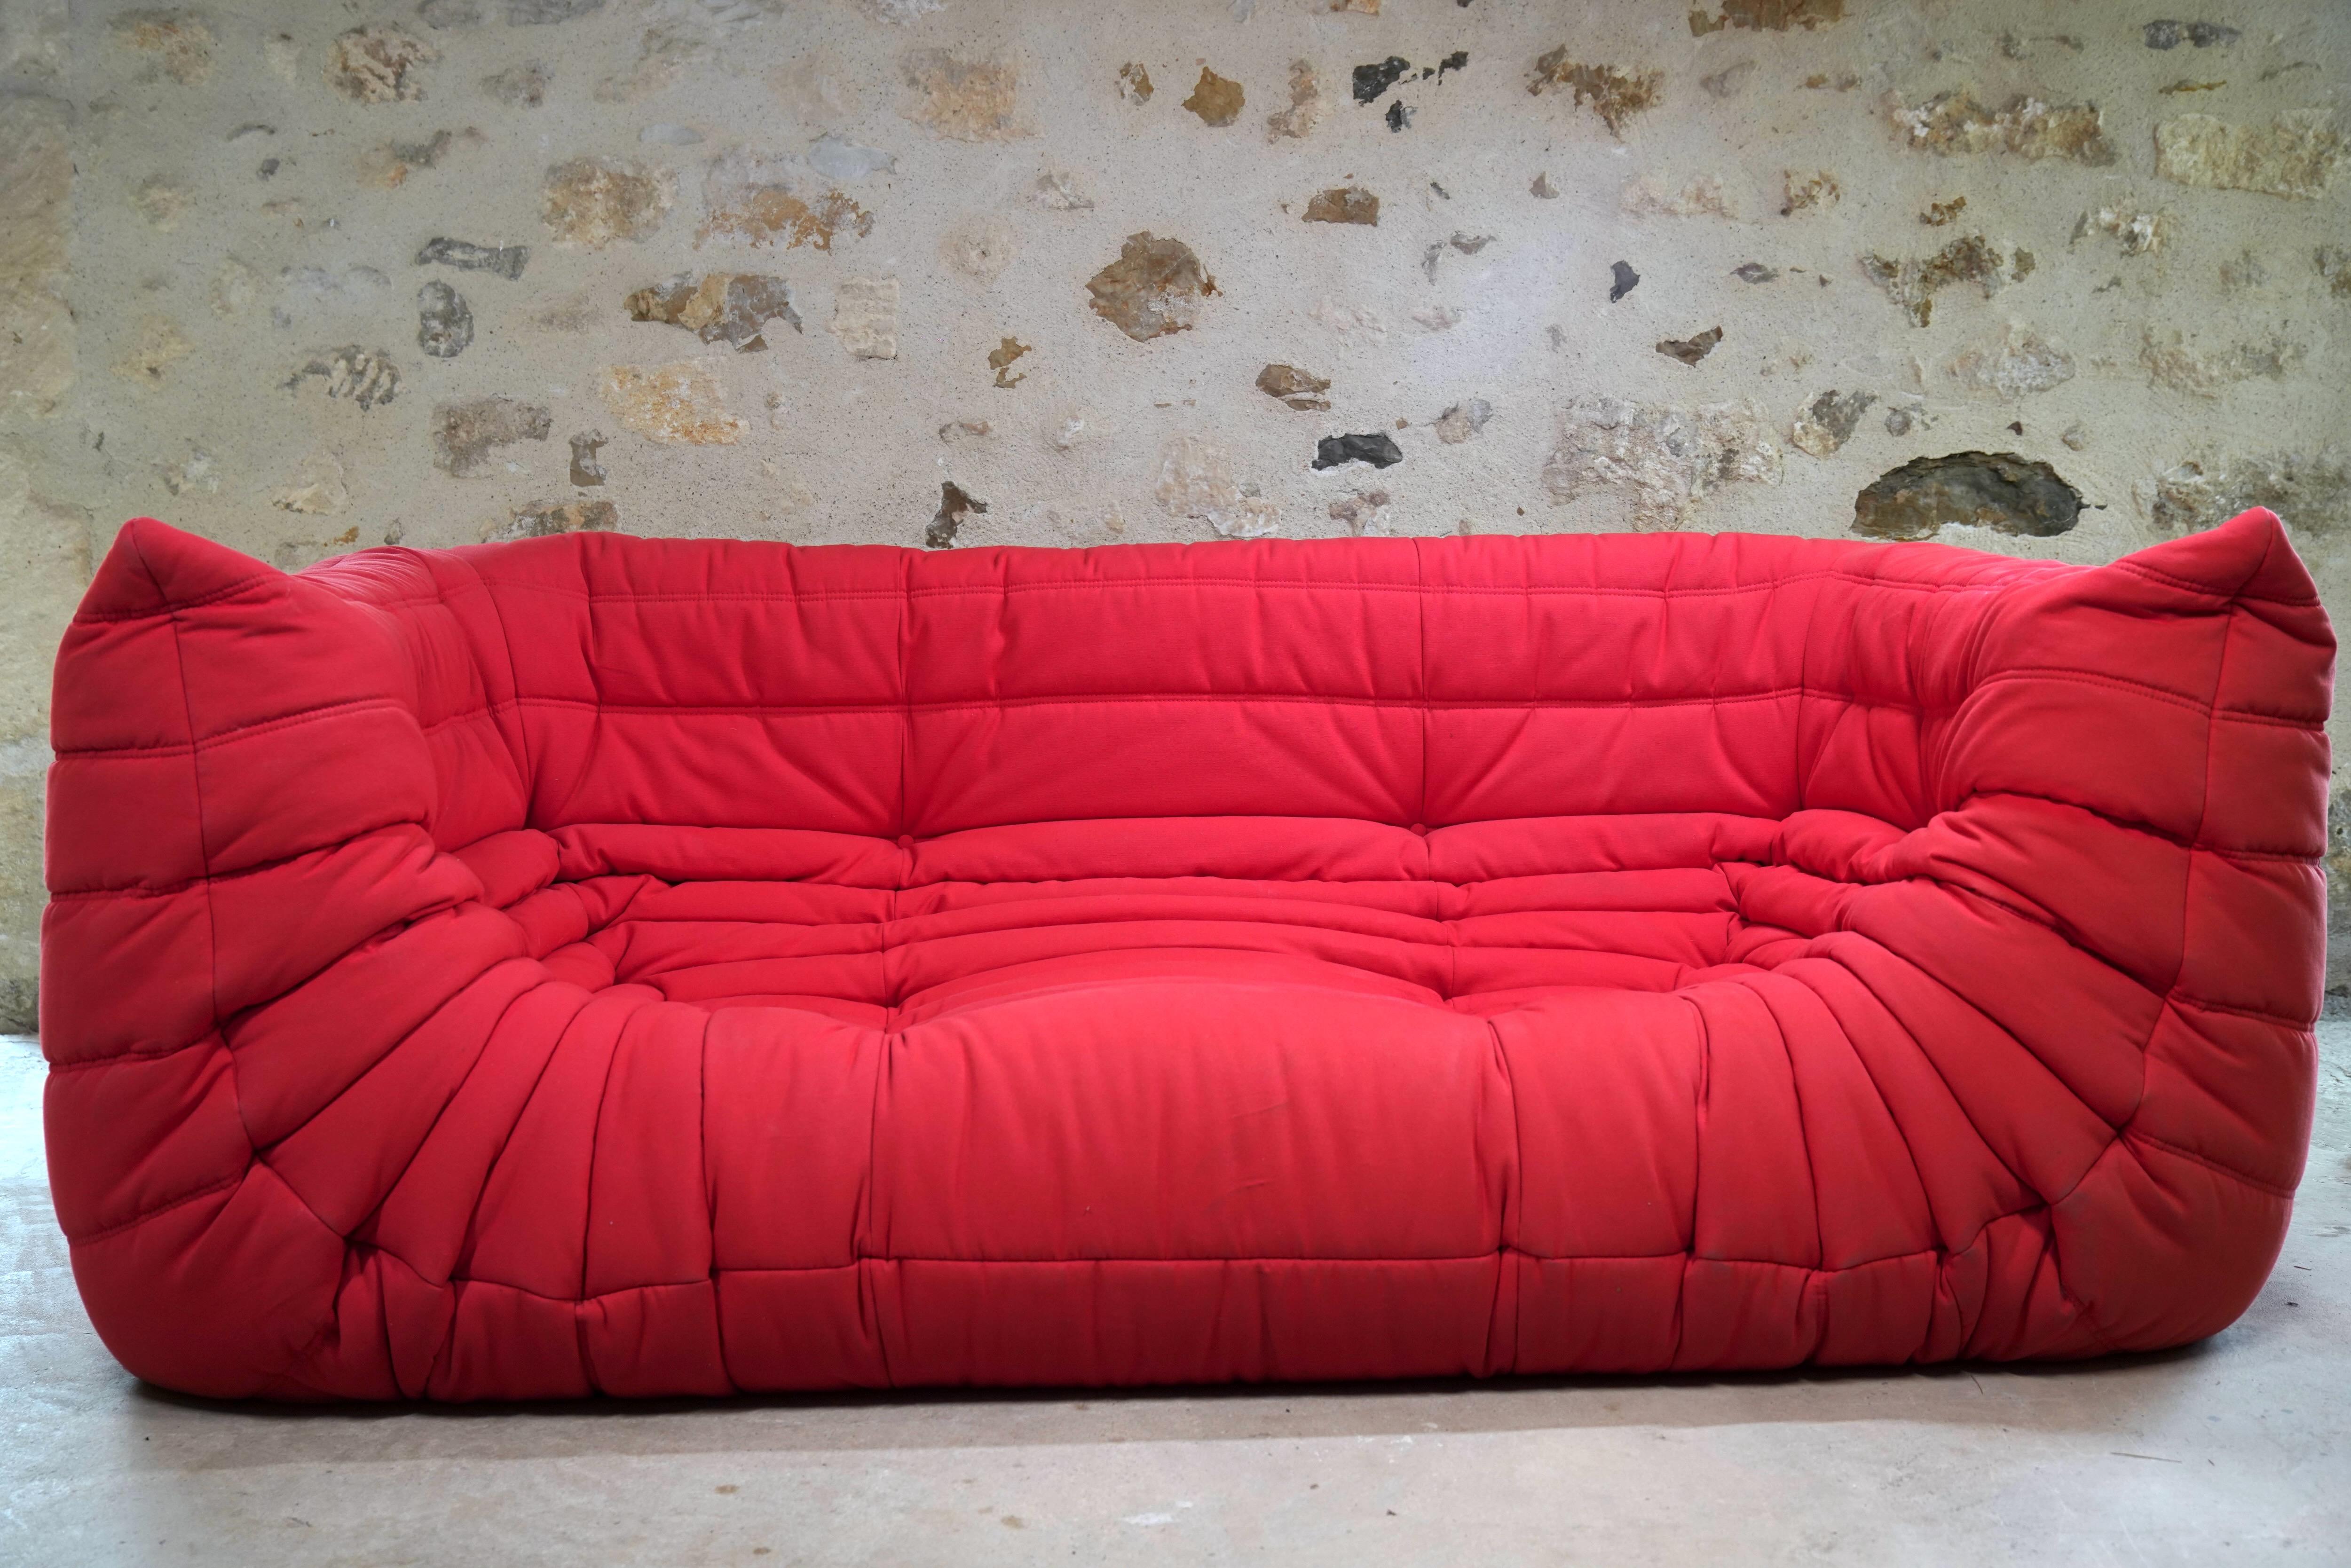 Wunderschönes dreisitziges rotes Alcantara-Sofa Togo, entworfen von Michel Ducaroy für Ligne Roset aus dem Jahr 2006.

Der Designer Michel Ducaroy ließ sich für das Design des Togo von einer Aluminium-Zahnpastatube inspirieren, die sich wie ein